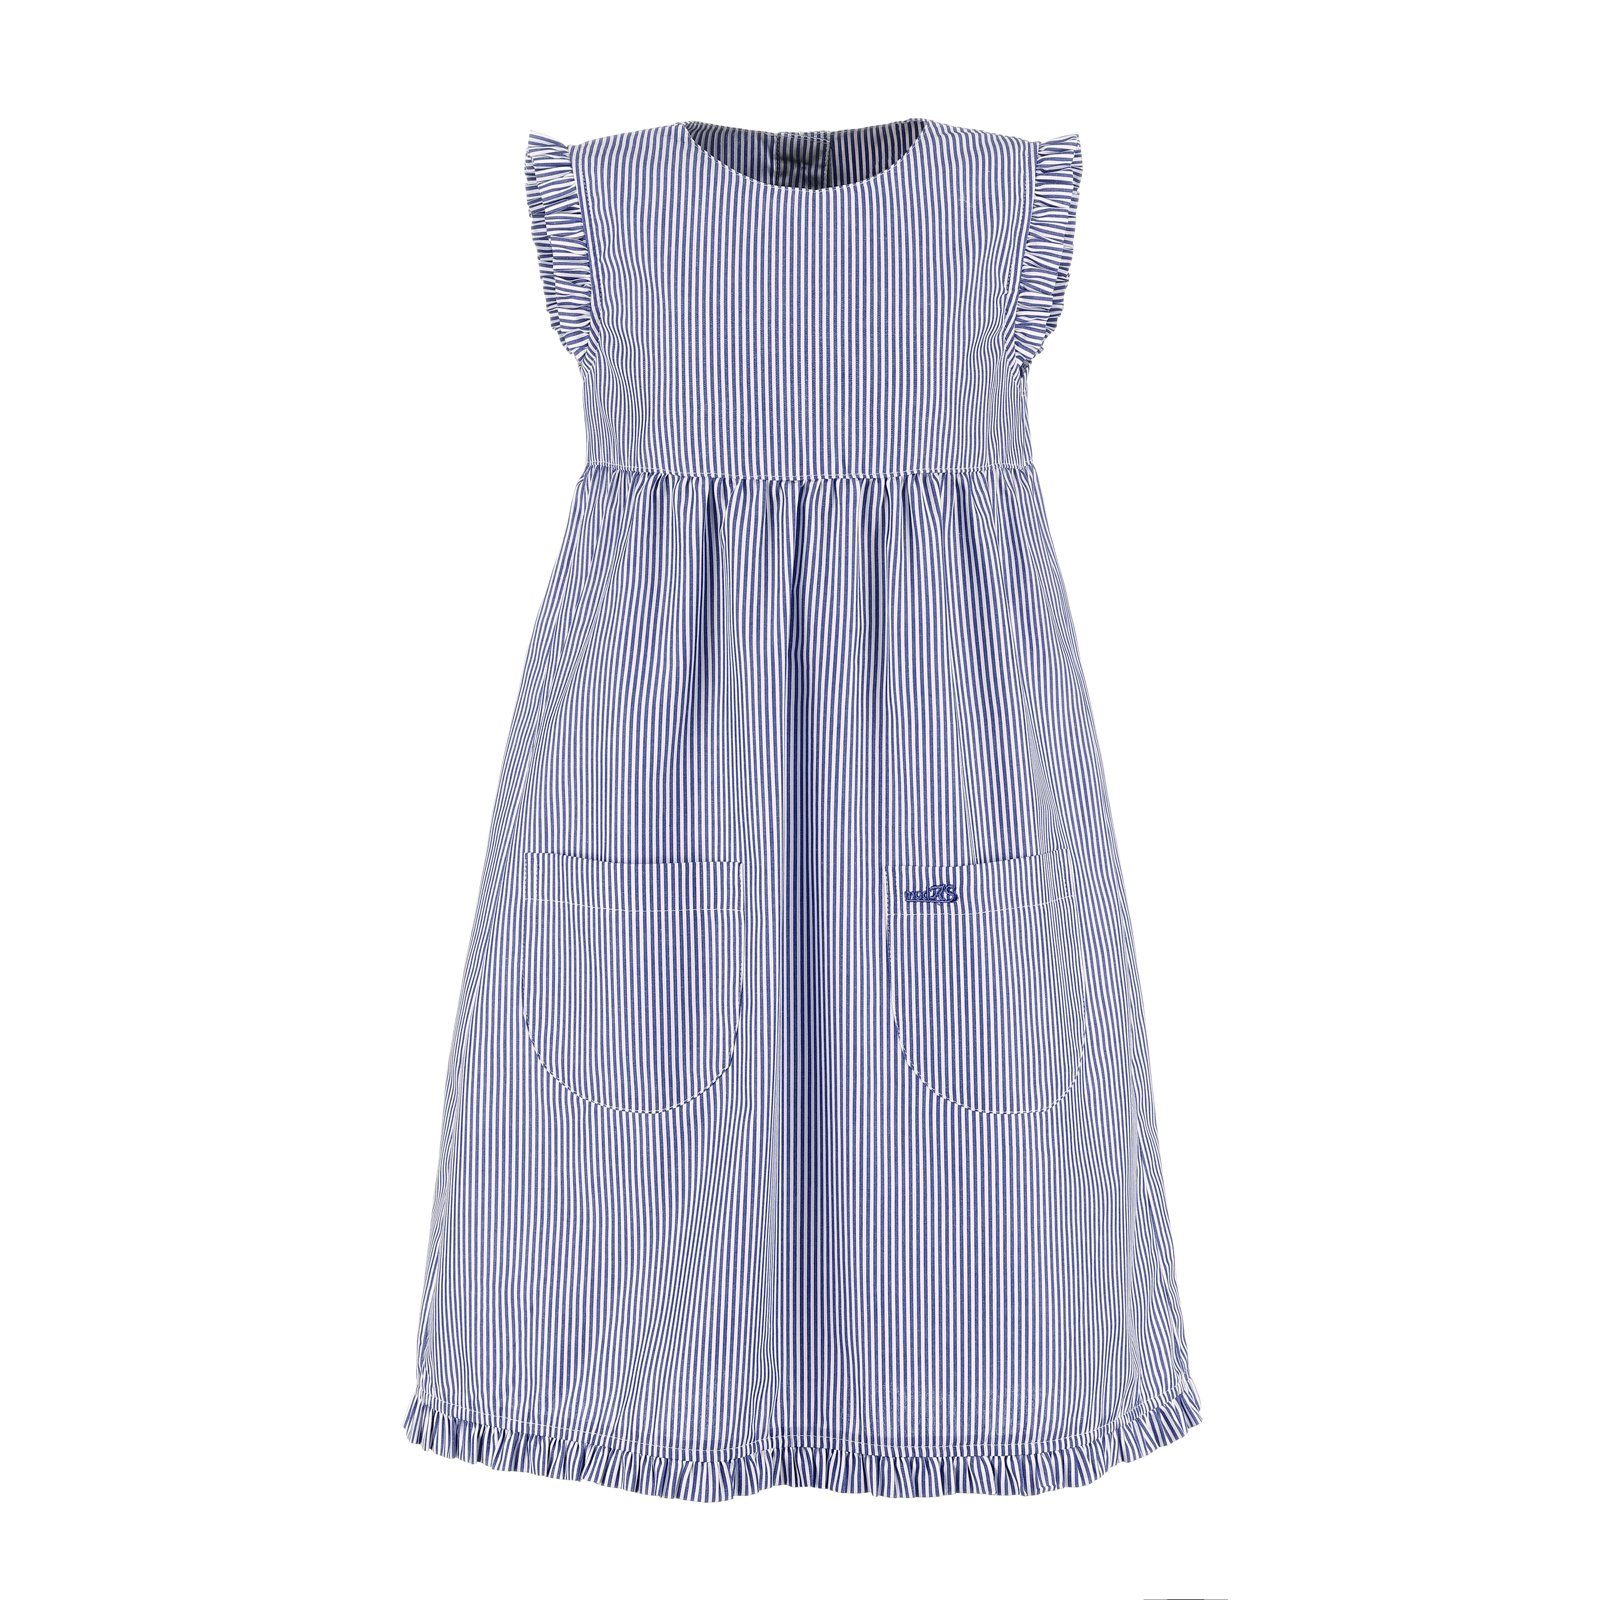 modAS Sommerkleid Kinder Kleid weiß marine gestreift (054) Streifen mit Rüschen gestreift mit - Mädchenkleid 